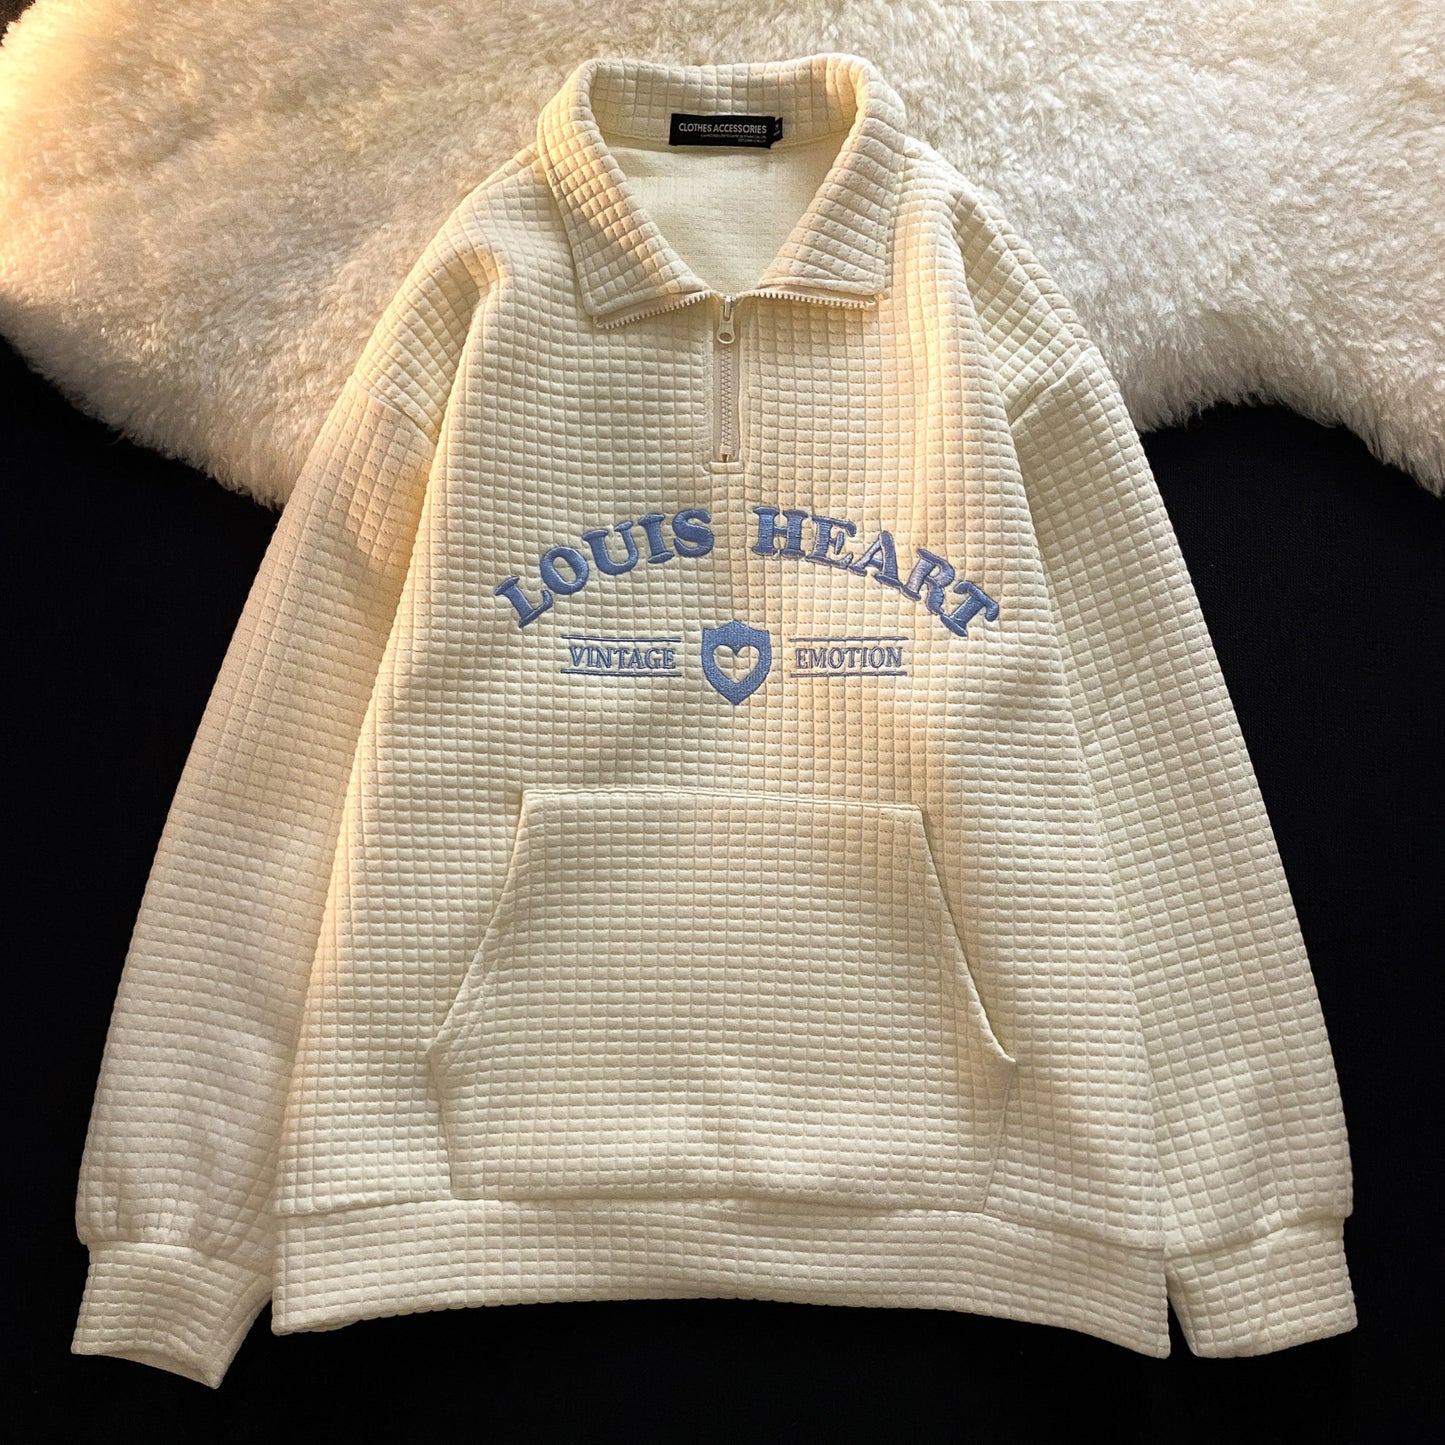 Louis Heart Sweatshirt